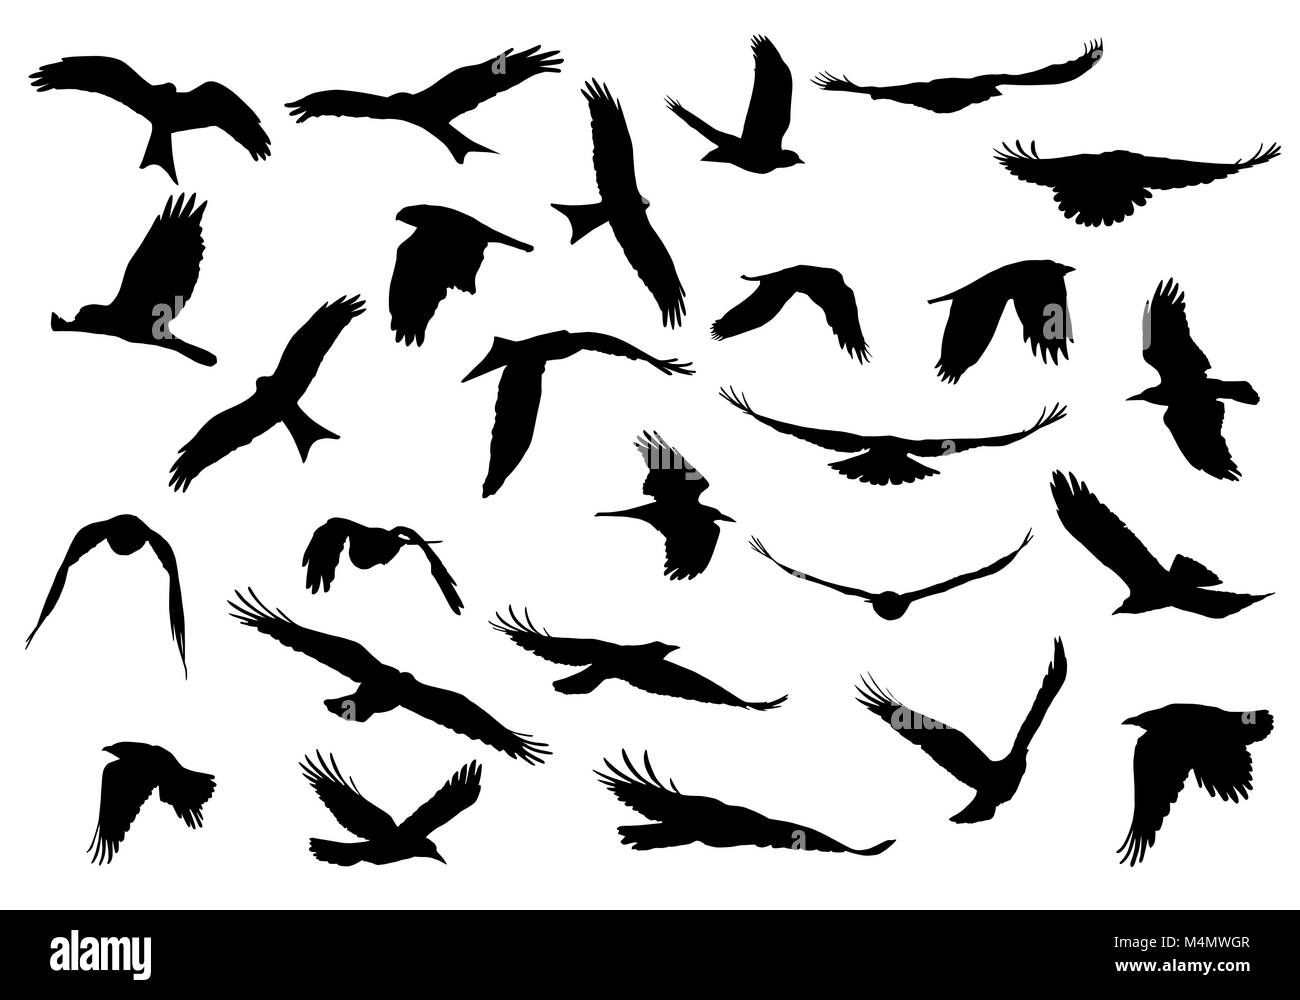 Série d'illustrations vectorielles réaliste de silhouettes d'oiseaux de proie en vol isolé sur fond blanc Illustration de Vecteur